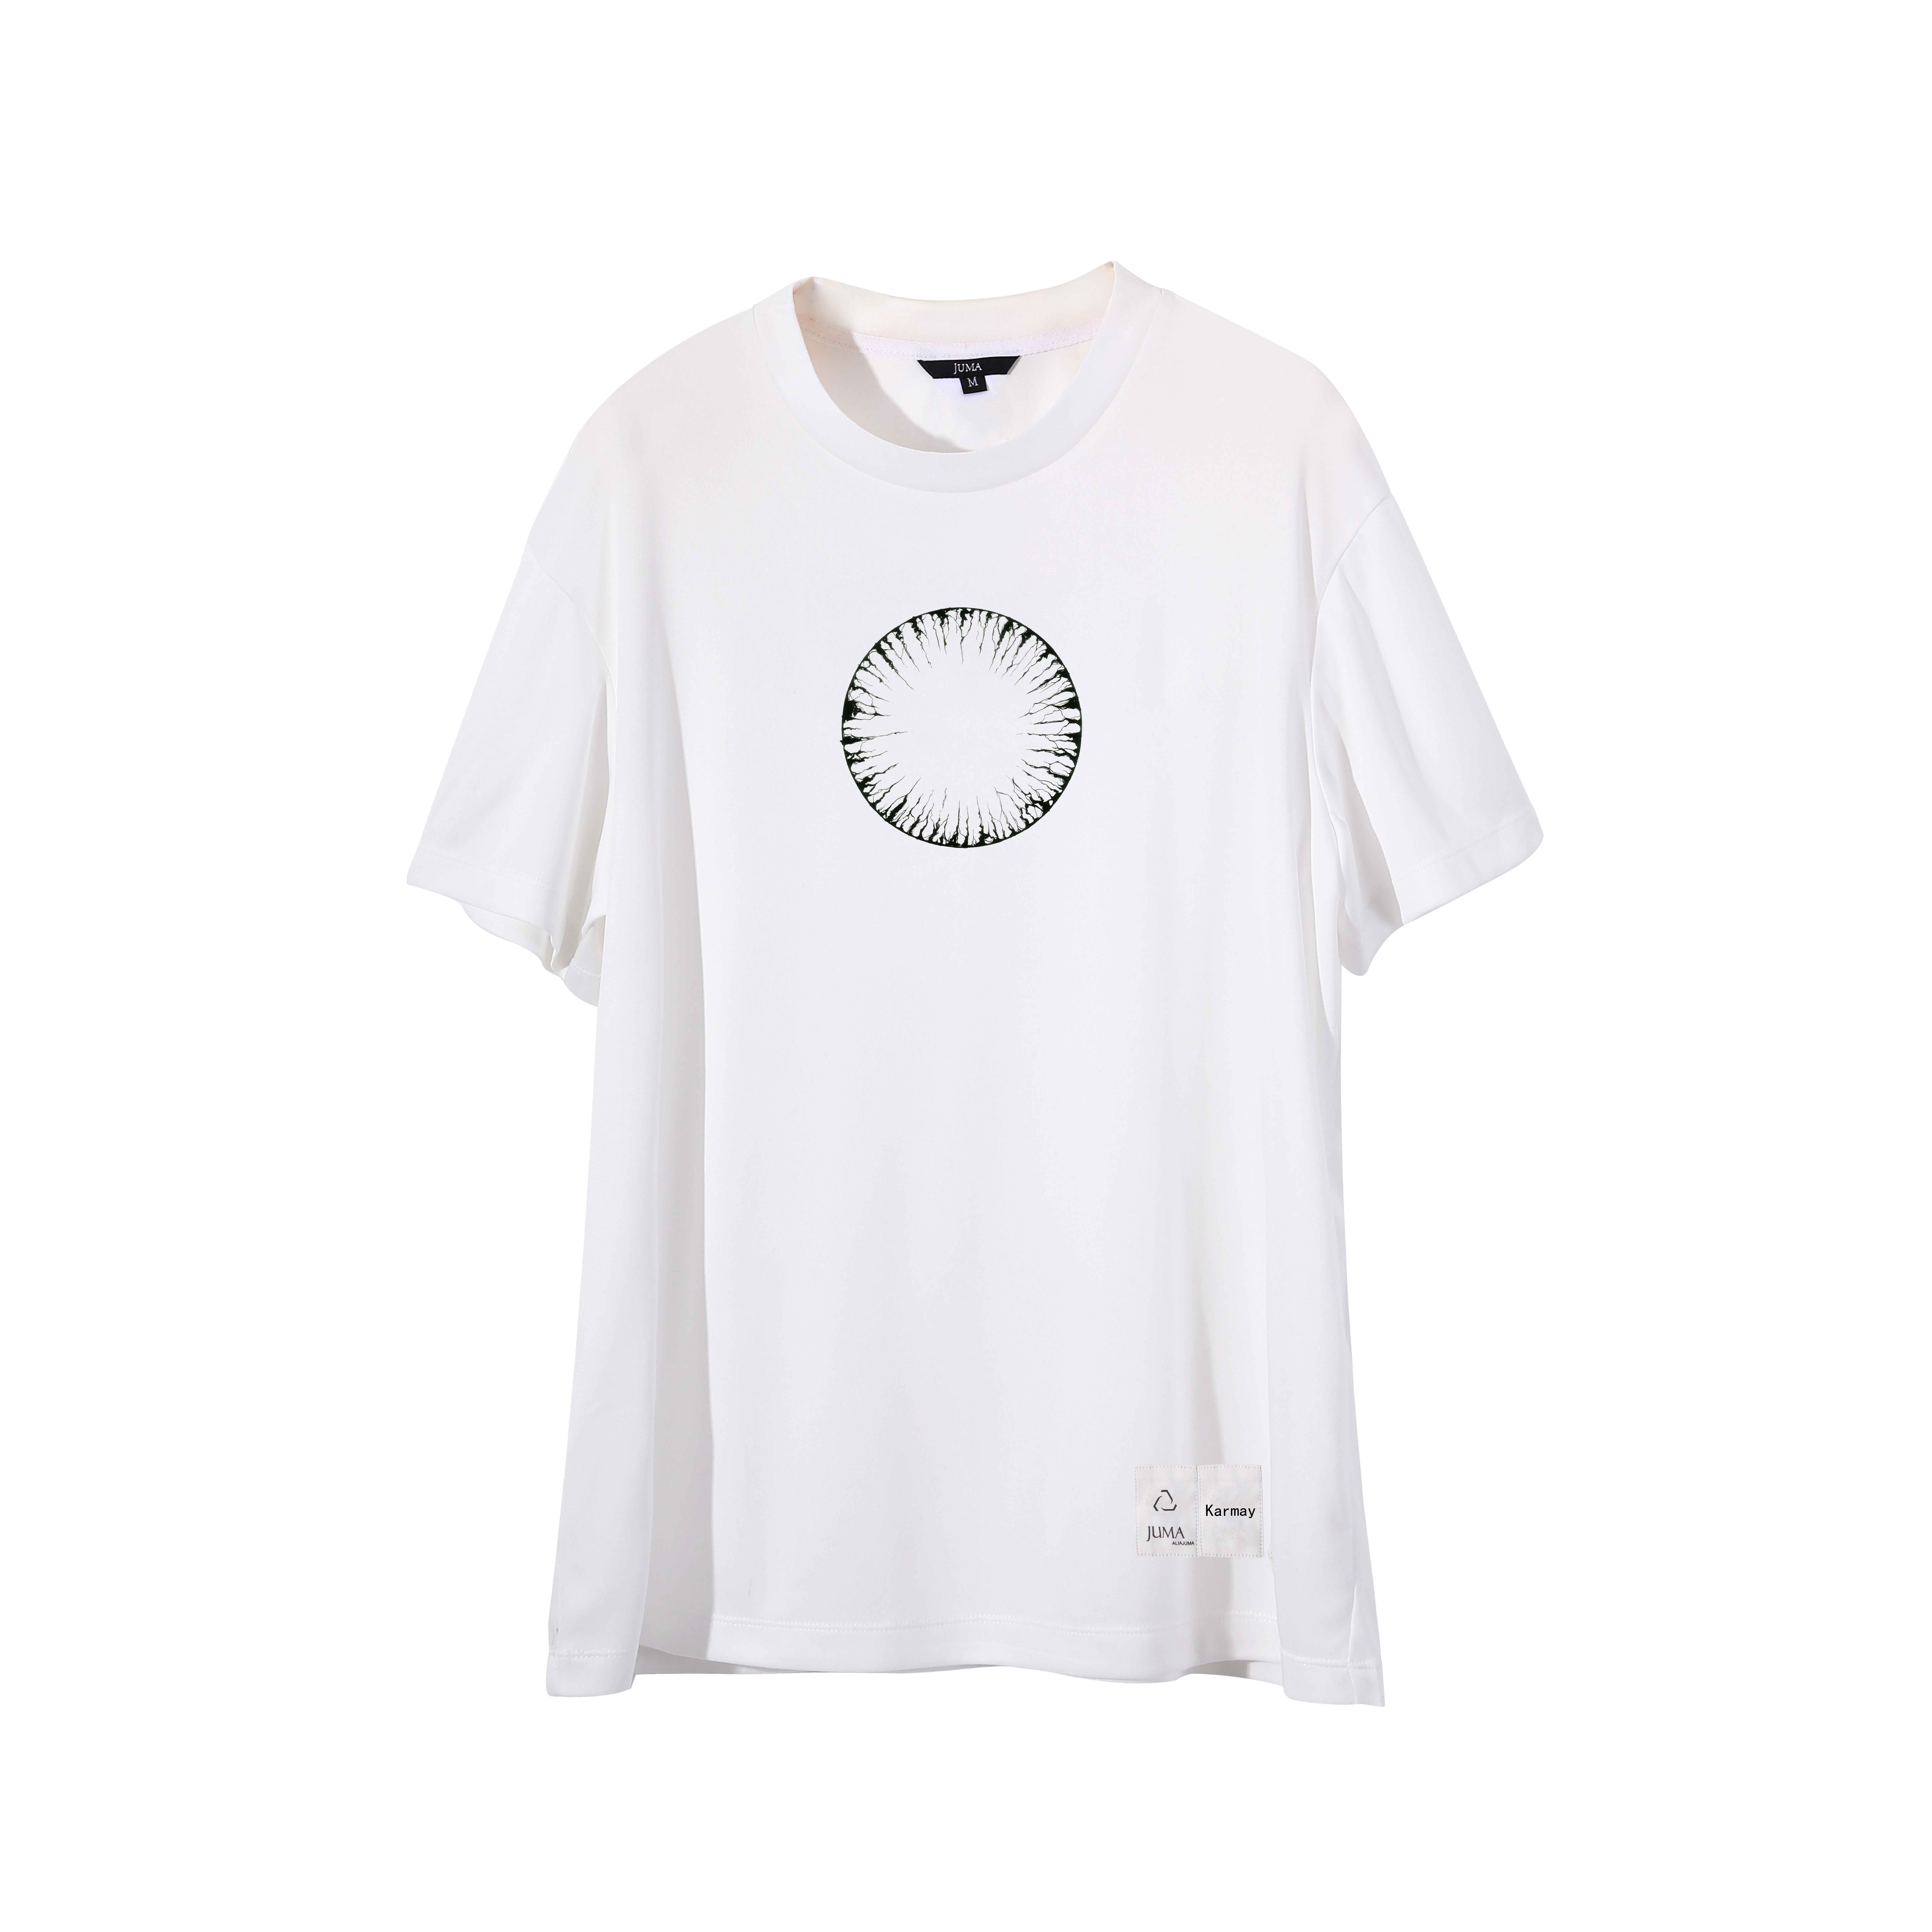 Karmay O T恤 - 4 个回收水瓶 - 白色｜Karmay O T-Shirt - 4 Recycled Water Bottles - White